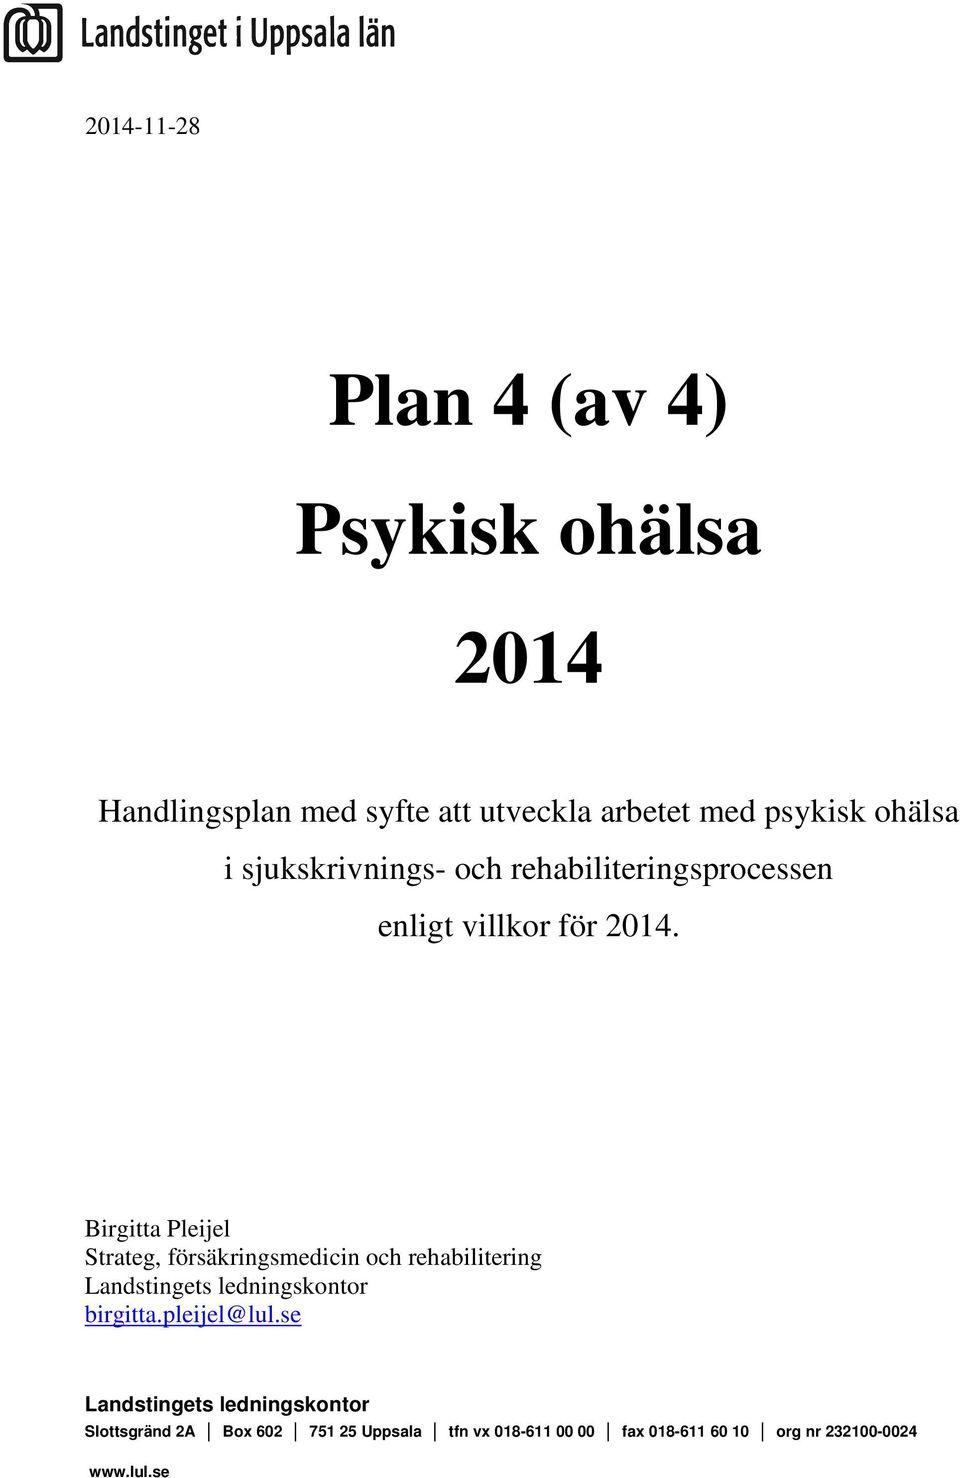 Birgitta Pleijel Strateg, försäkringsmedicin och rehabilitering Landstingets ledningskontor birgitta.pleijel@lul.